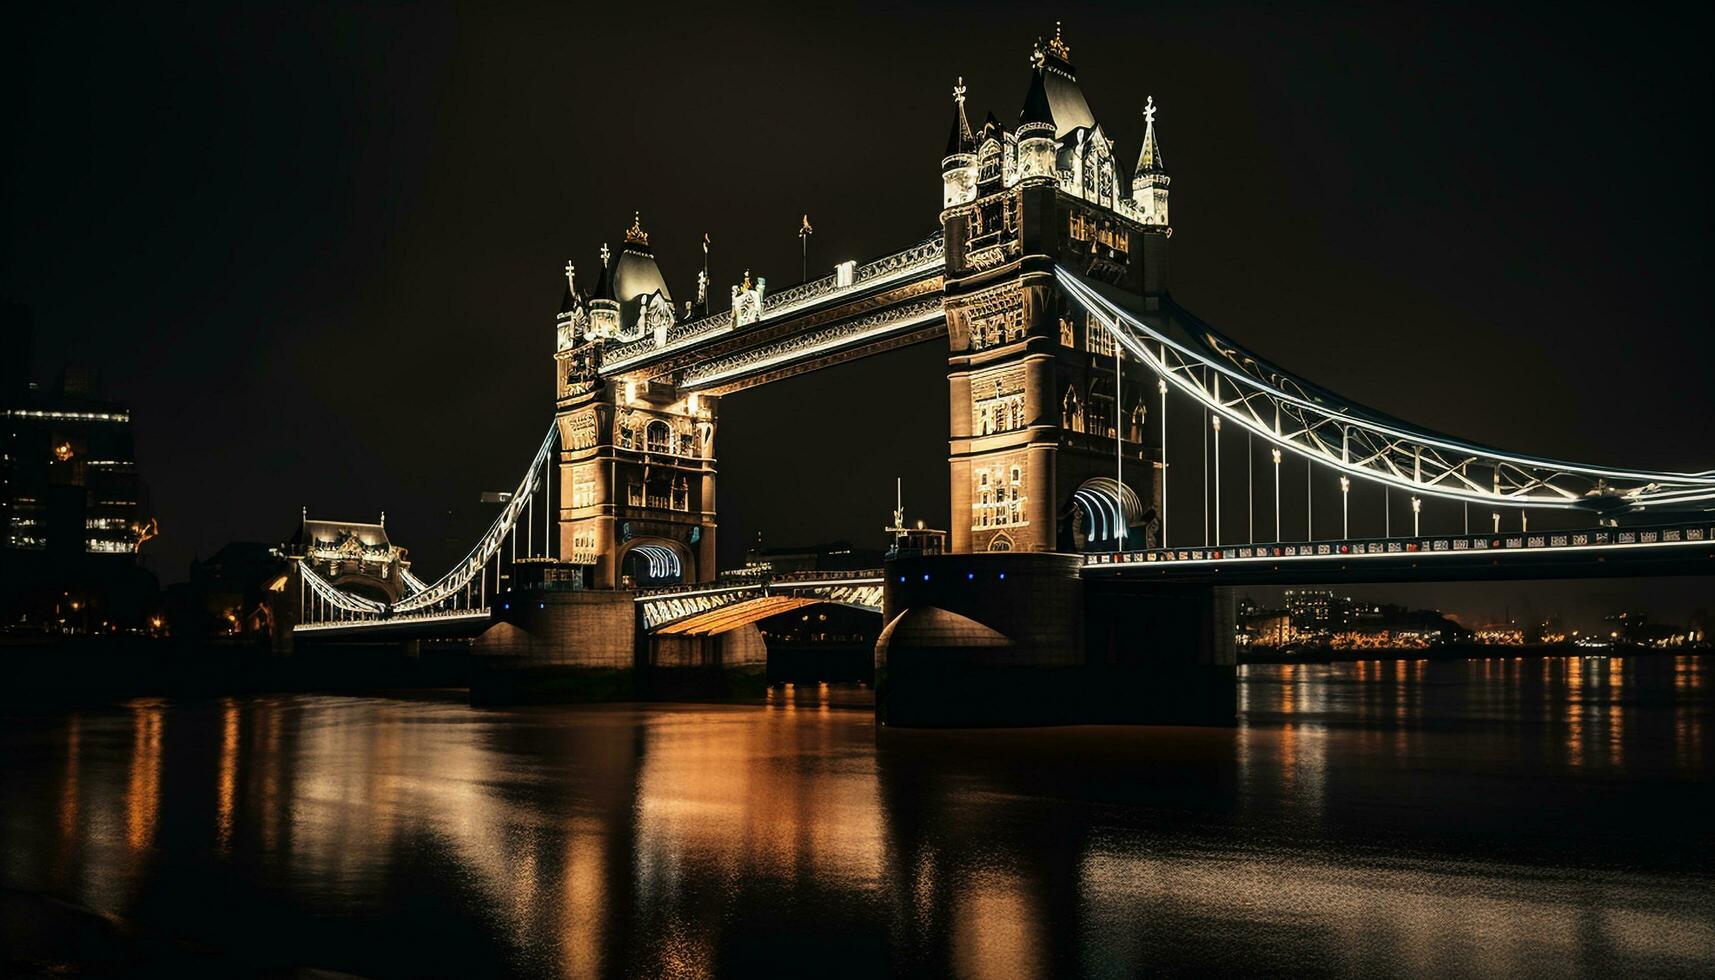 Illuminated bridge reflects majestic city skyline at dusk generated by AI photo